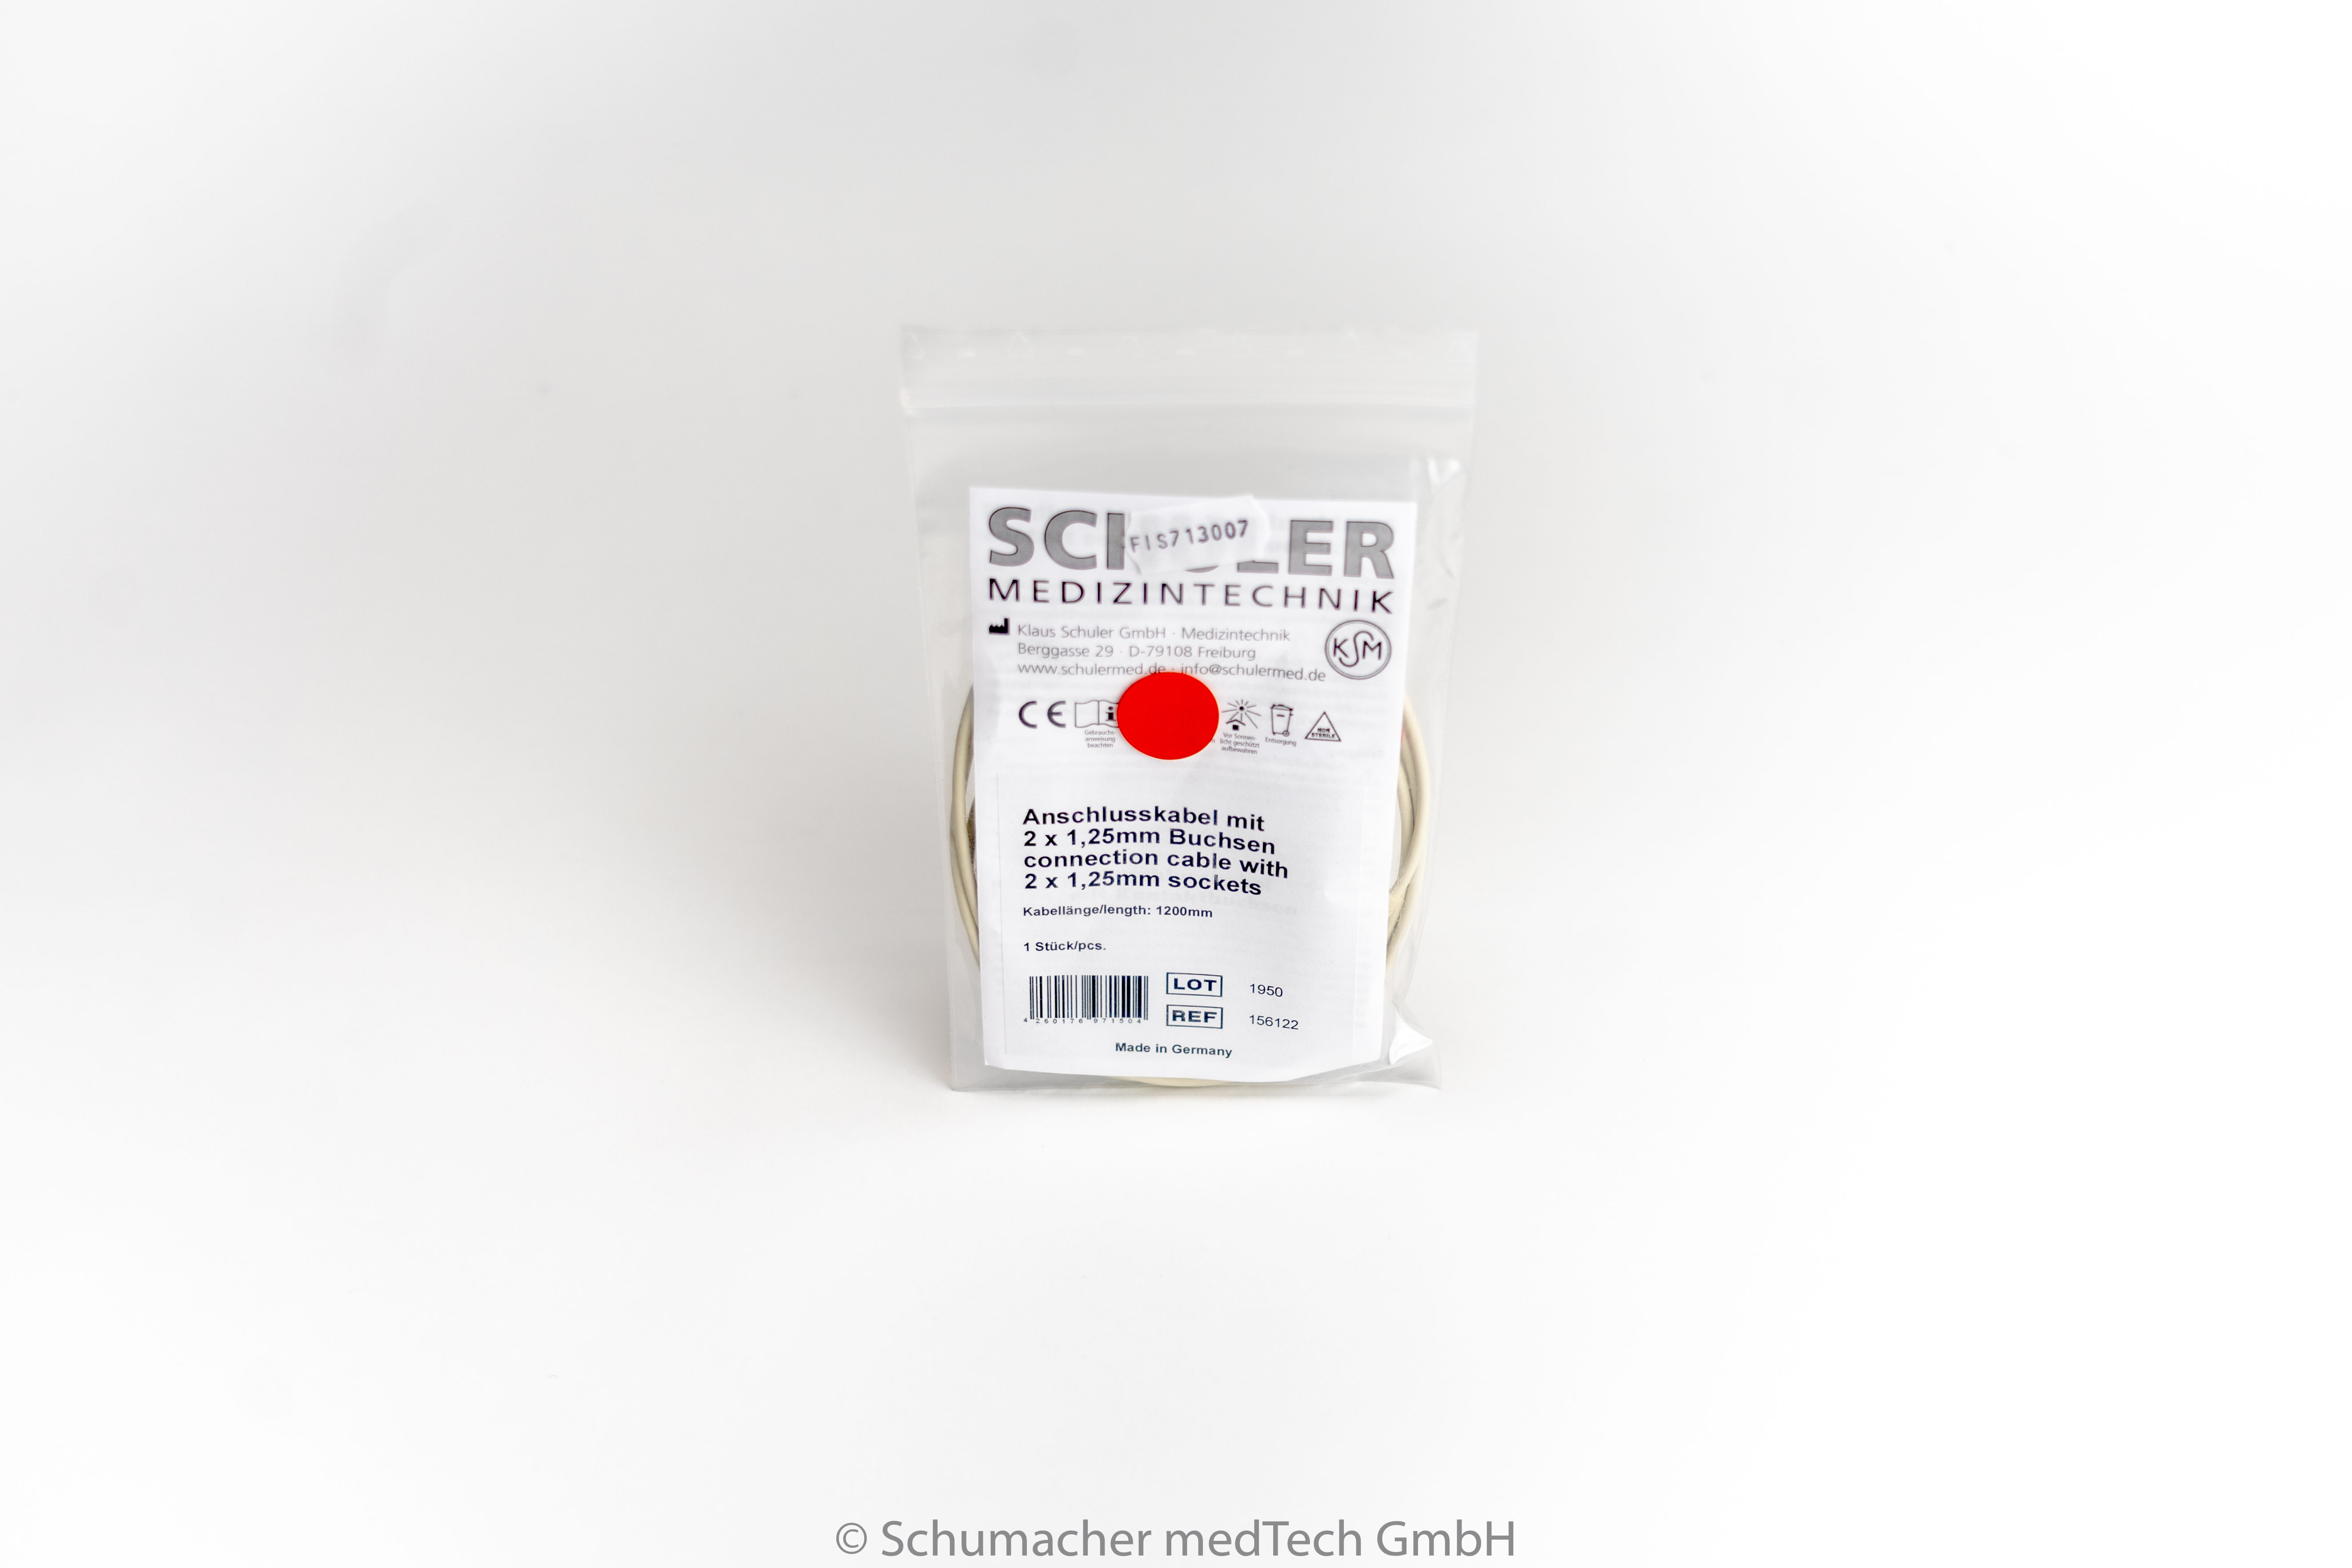 EP-Anschlusskabel 2 x 1,25mm Buchse (DIN) Buchsen rot/schwarz, 5pol. | FIS713007